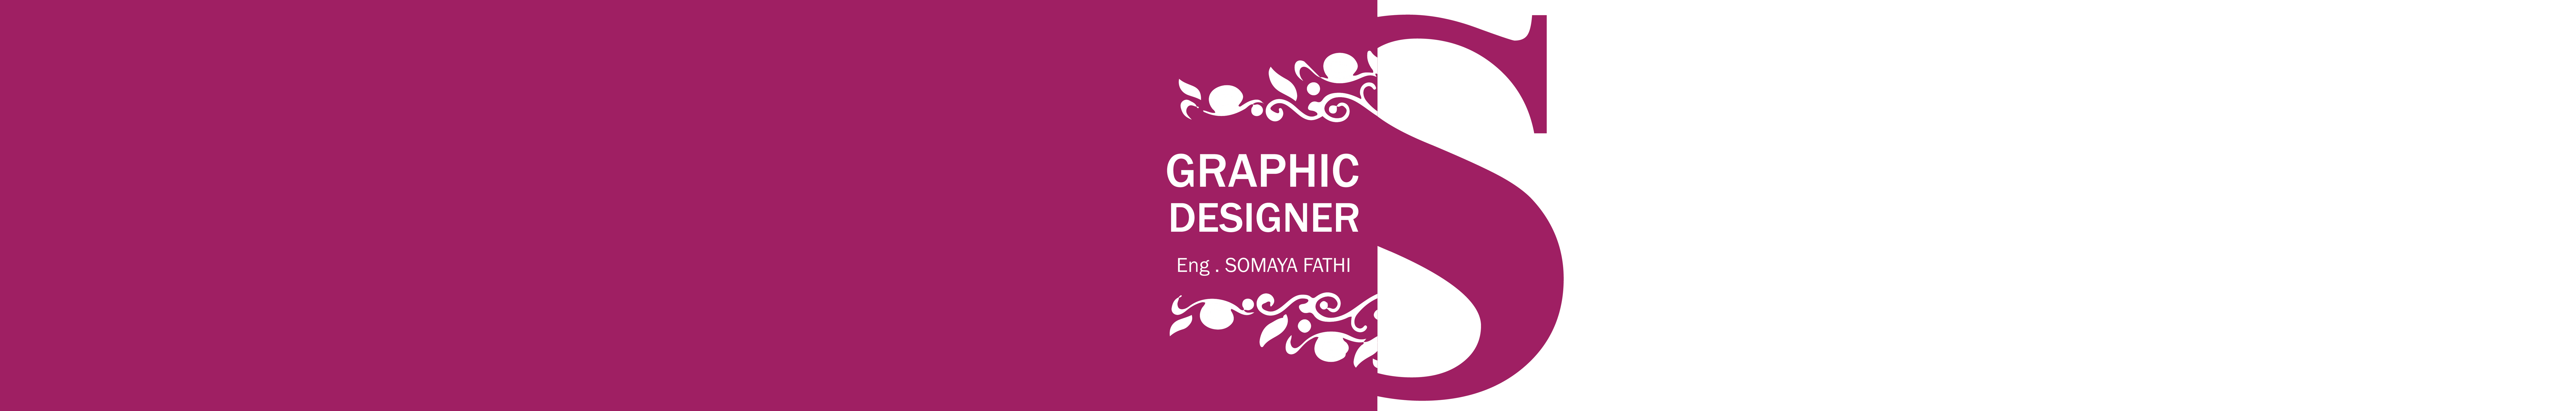 Somaya Fathi's profile banner